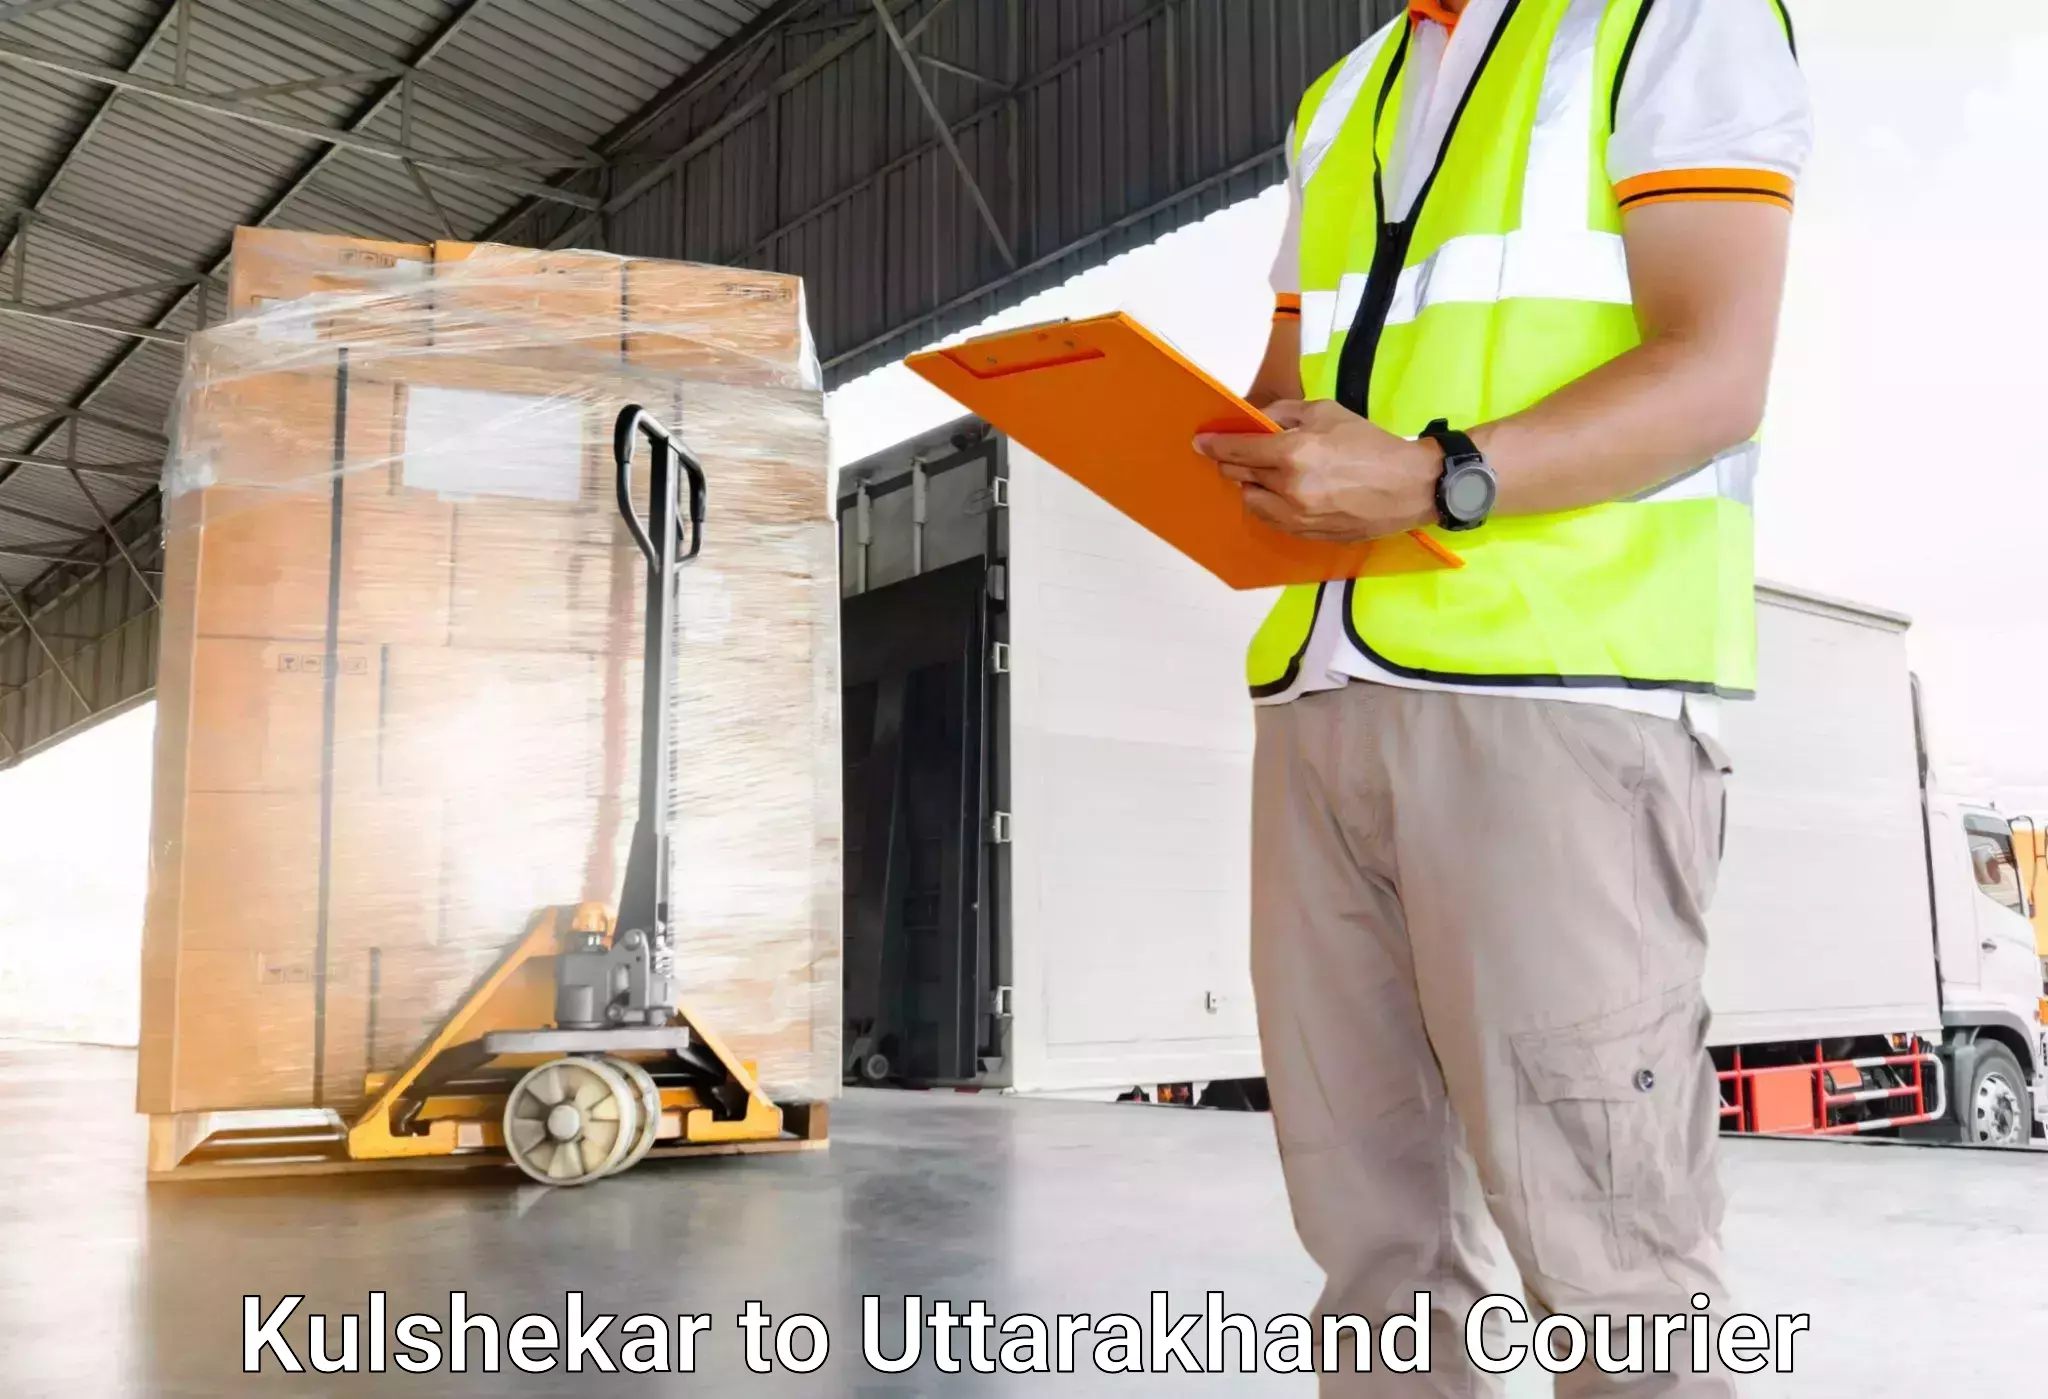 Luggage transport rates Kulshekar to Uttarakhand